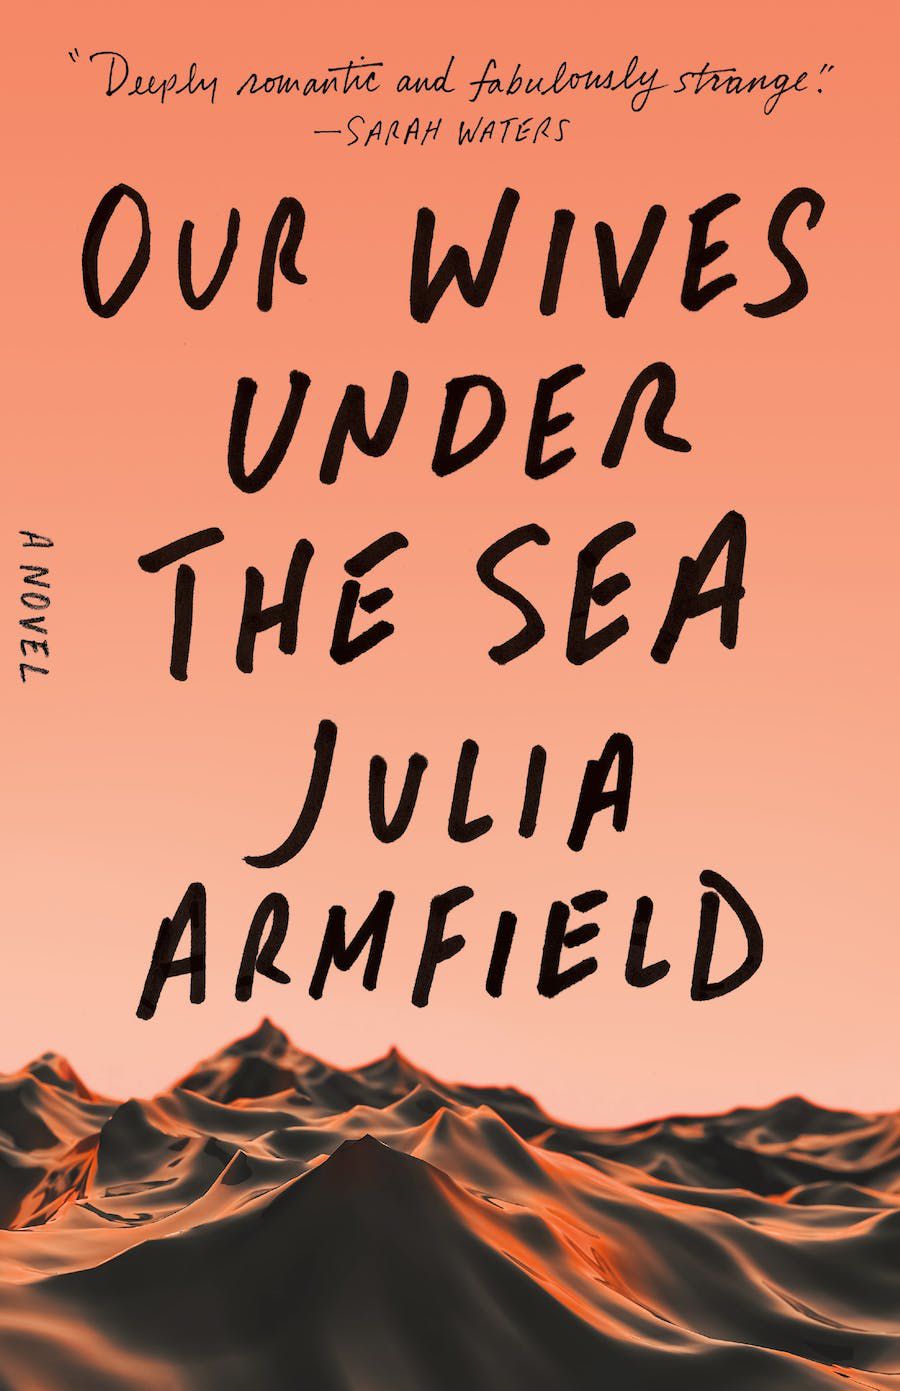 Immagine di copertina di Le nostre mogli sotto i mari, con uno sfondo rosa su quella che sembra una catena montuosa fatta di materiale morbido.